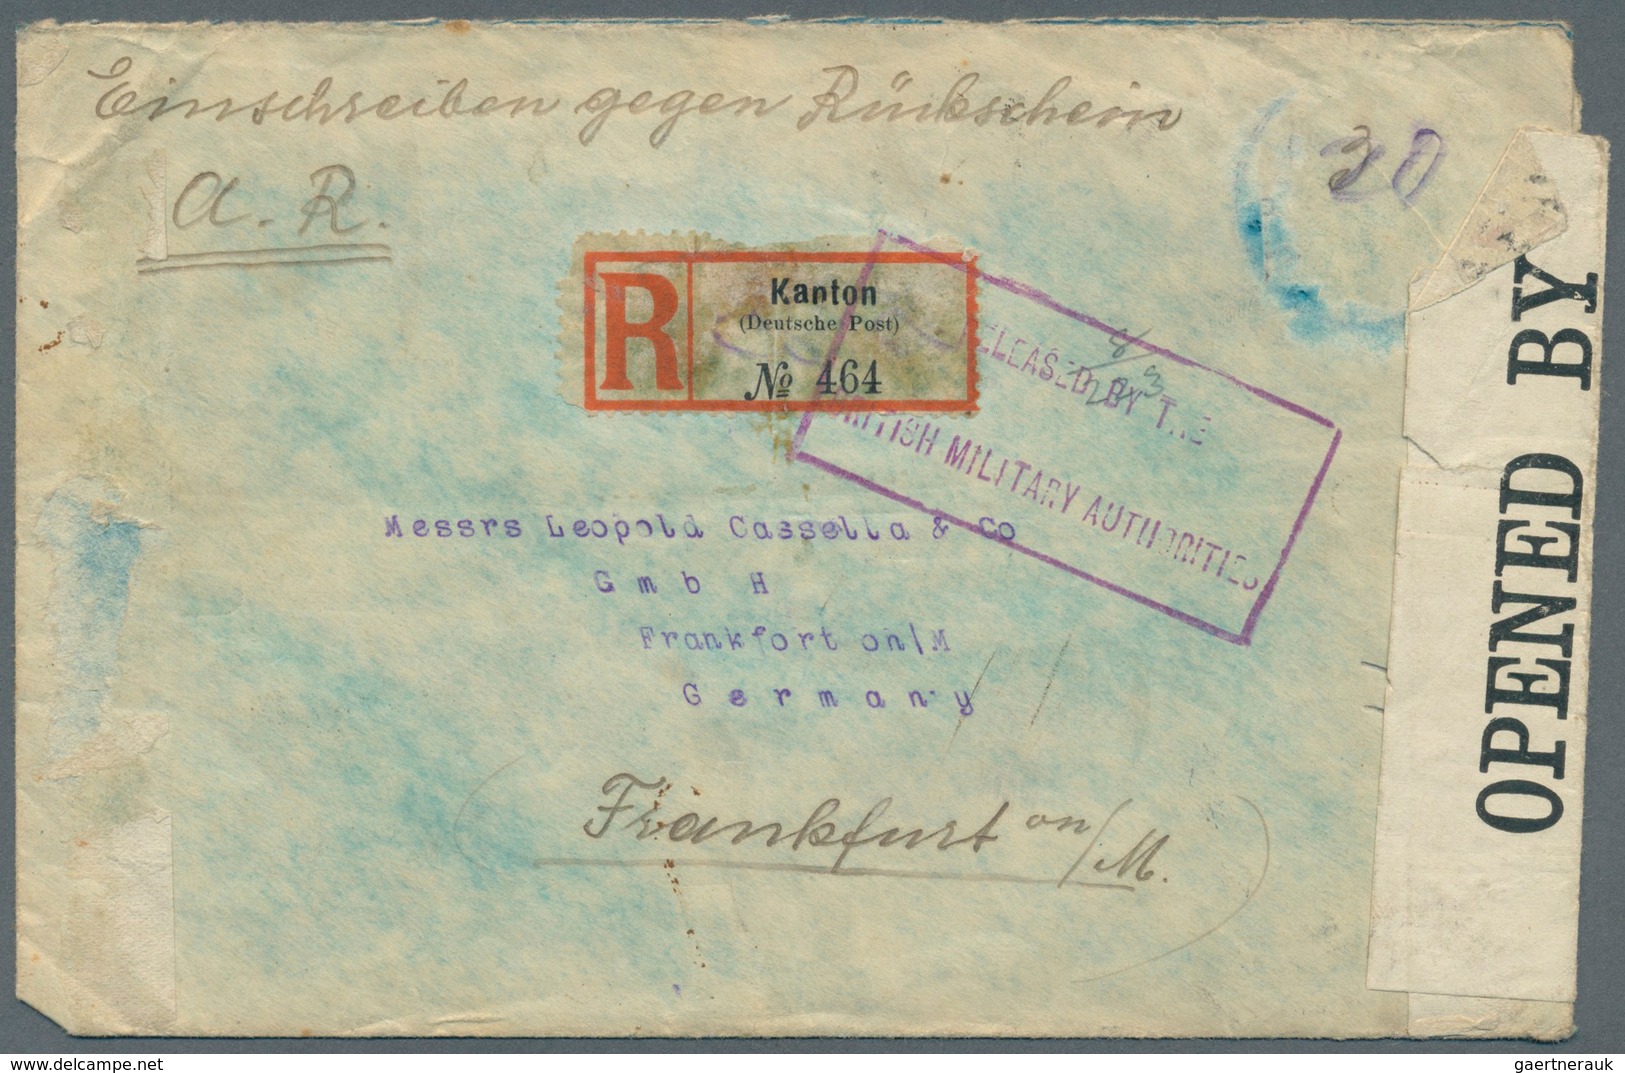 Deutsche Post In China: 1906/1919, 20 C Auf 40 Pf U.a. Rs. Auf Extrem Seltenen Einschreib-Rückschein - China (offices)